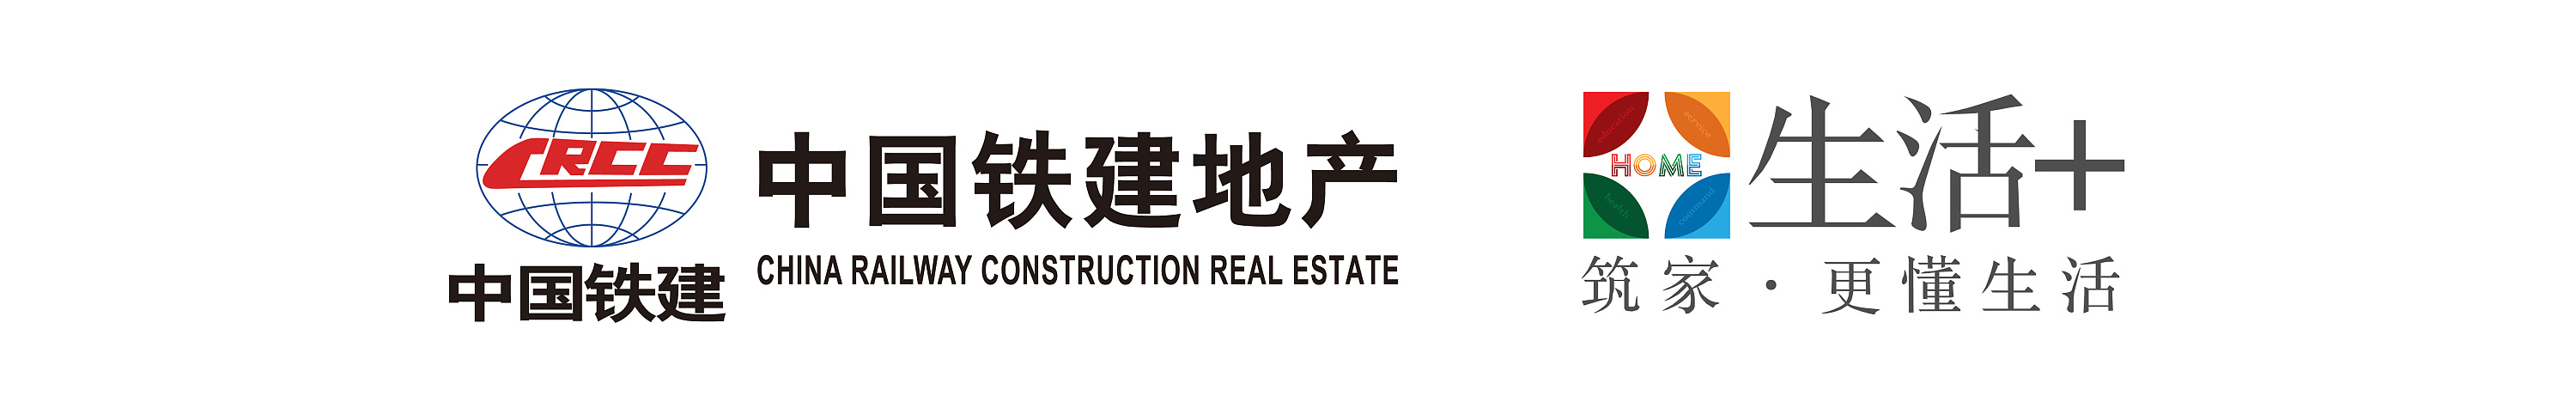 大连《中国铁建地产·生活家》logo及vi设计